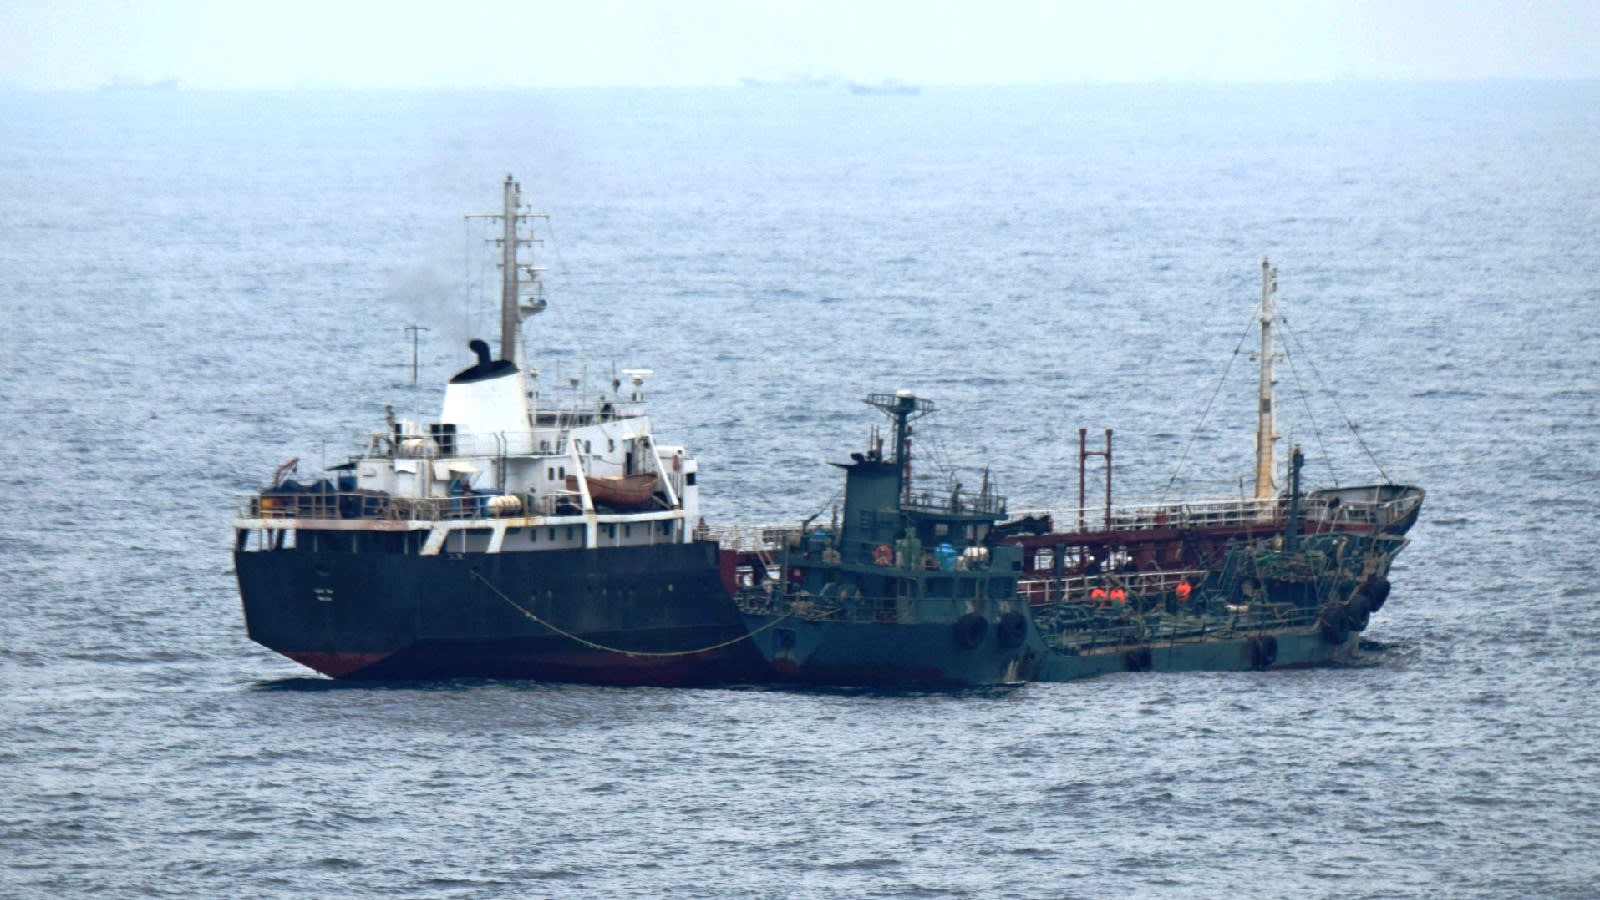 عملية نقل من سفينة لأخرى تنطوي على ناقلة كورية شمالية في بحر الصين الشرقي